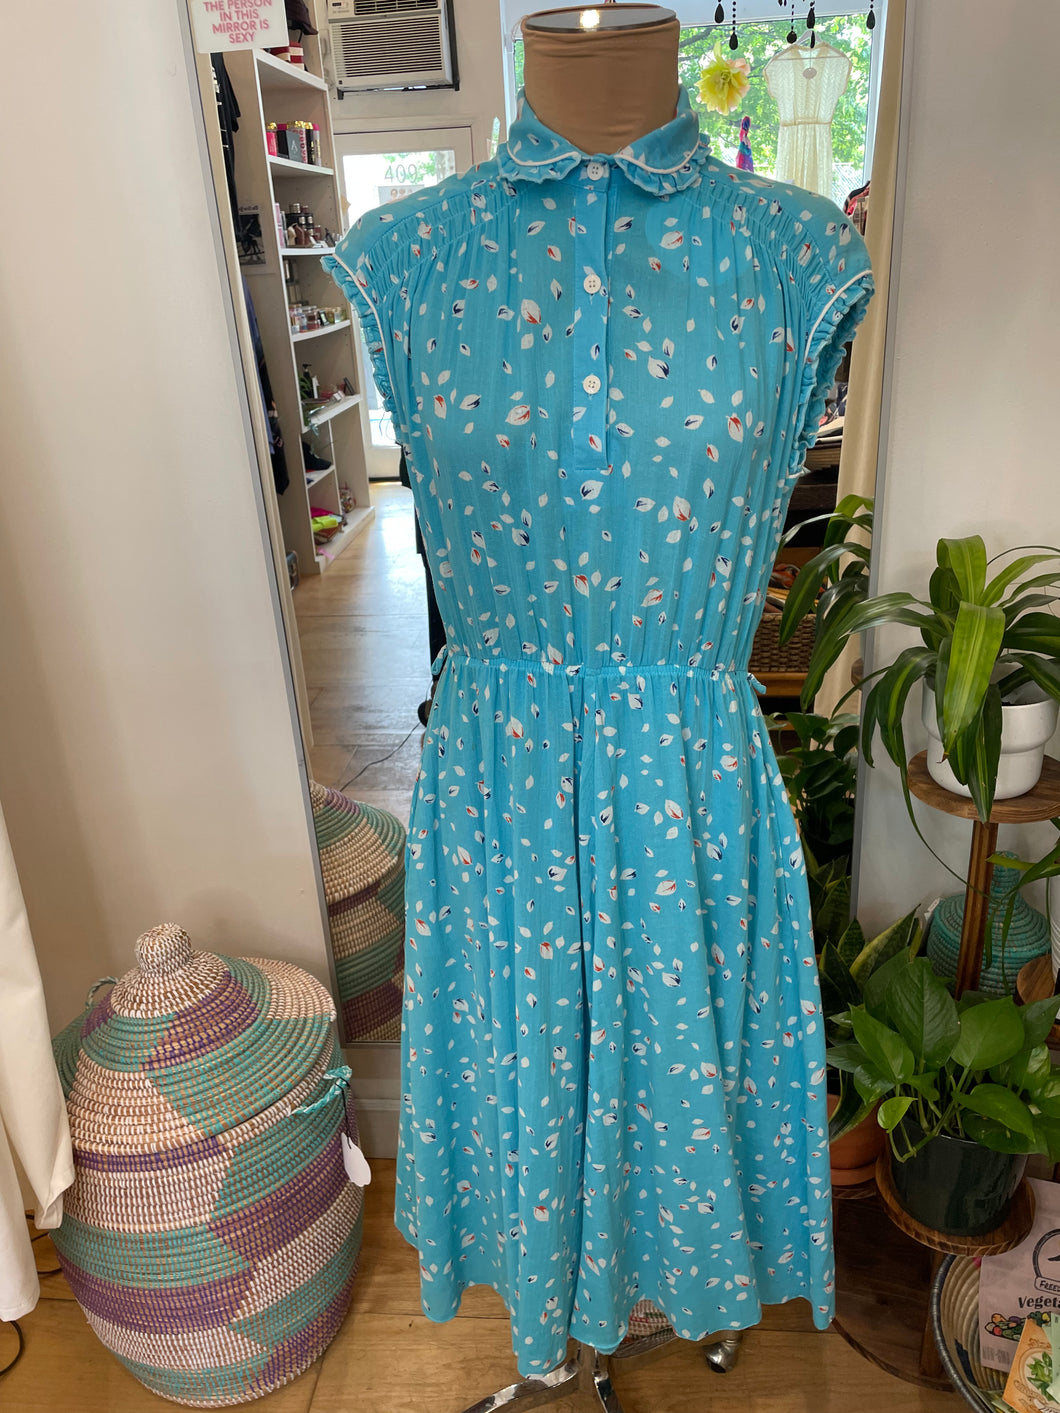 Vintage Blue Dress